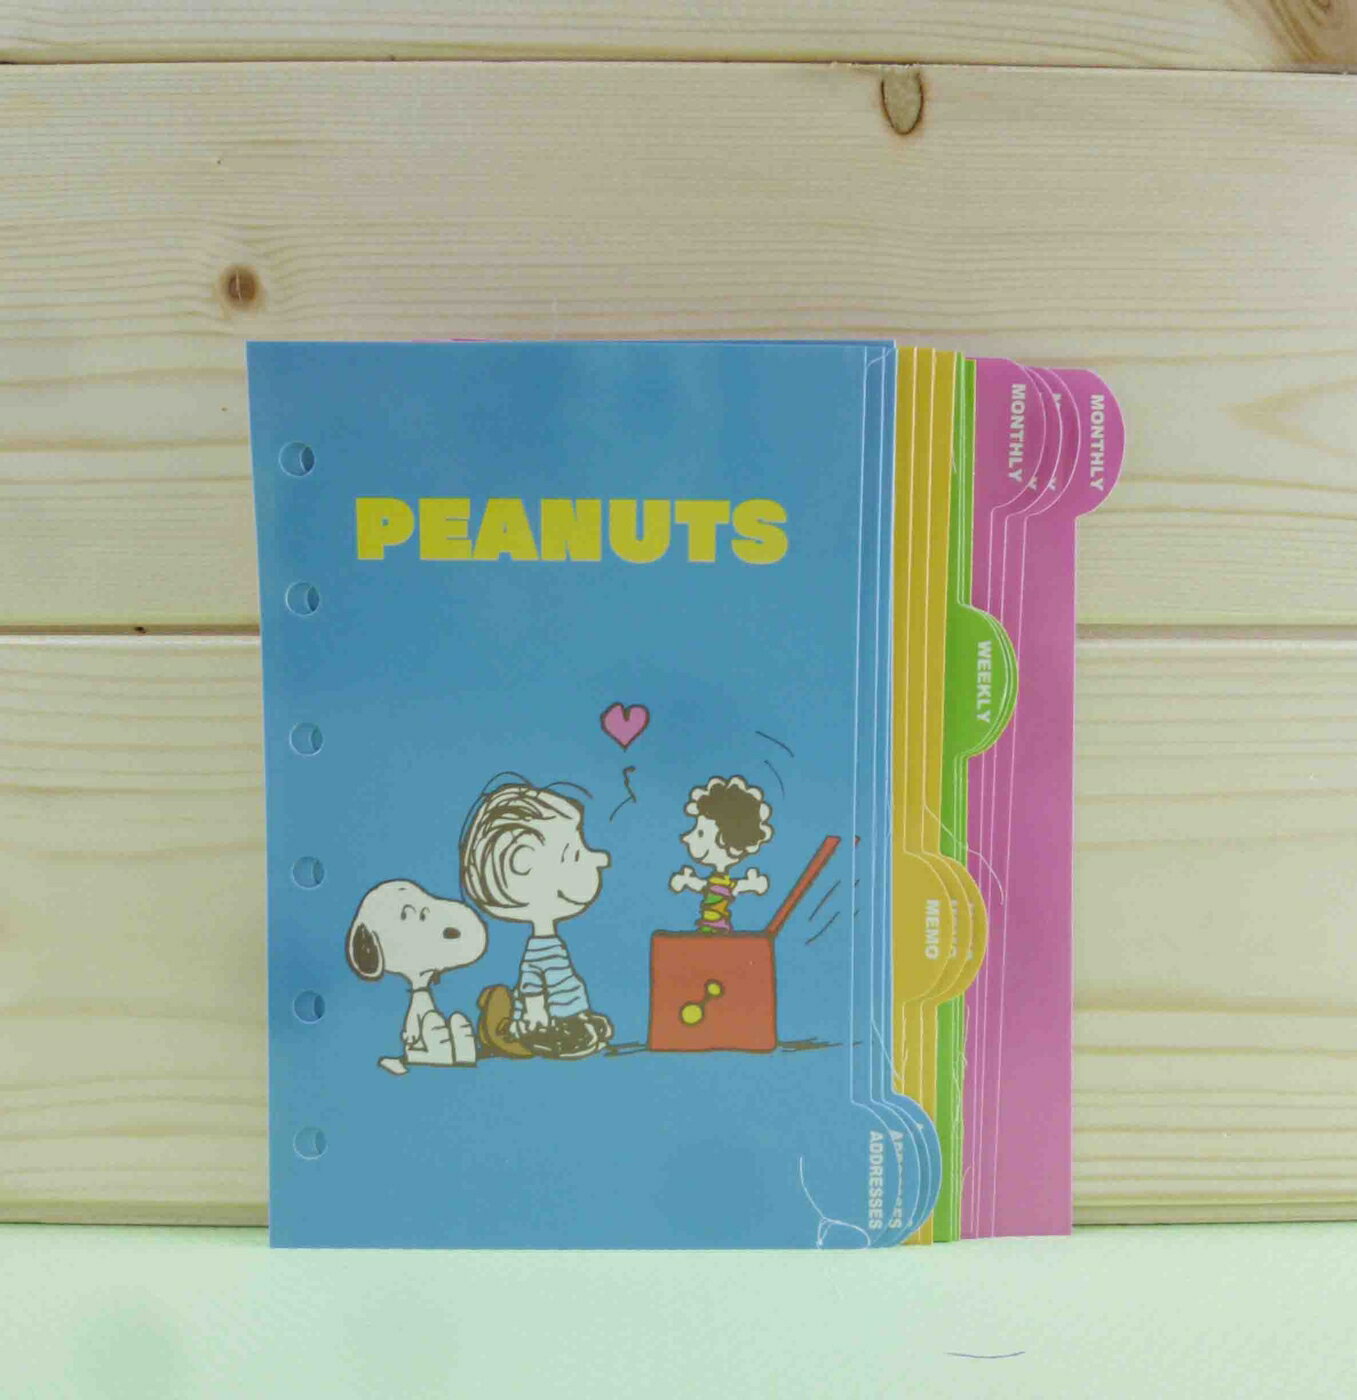 【震撼精品百貨】史奴比Peanuts Snoopy 貼紙本夾板-藍魔術 震撼日式精品百貨